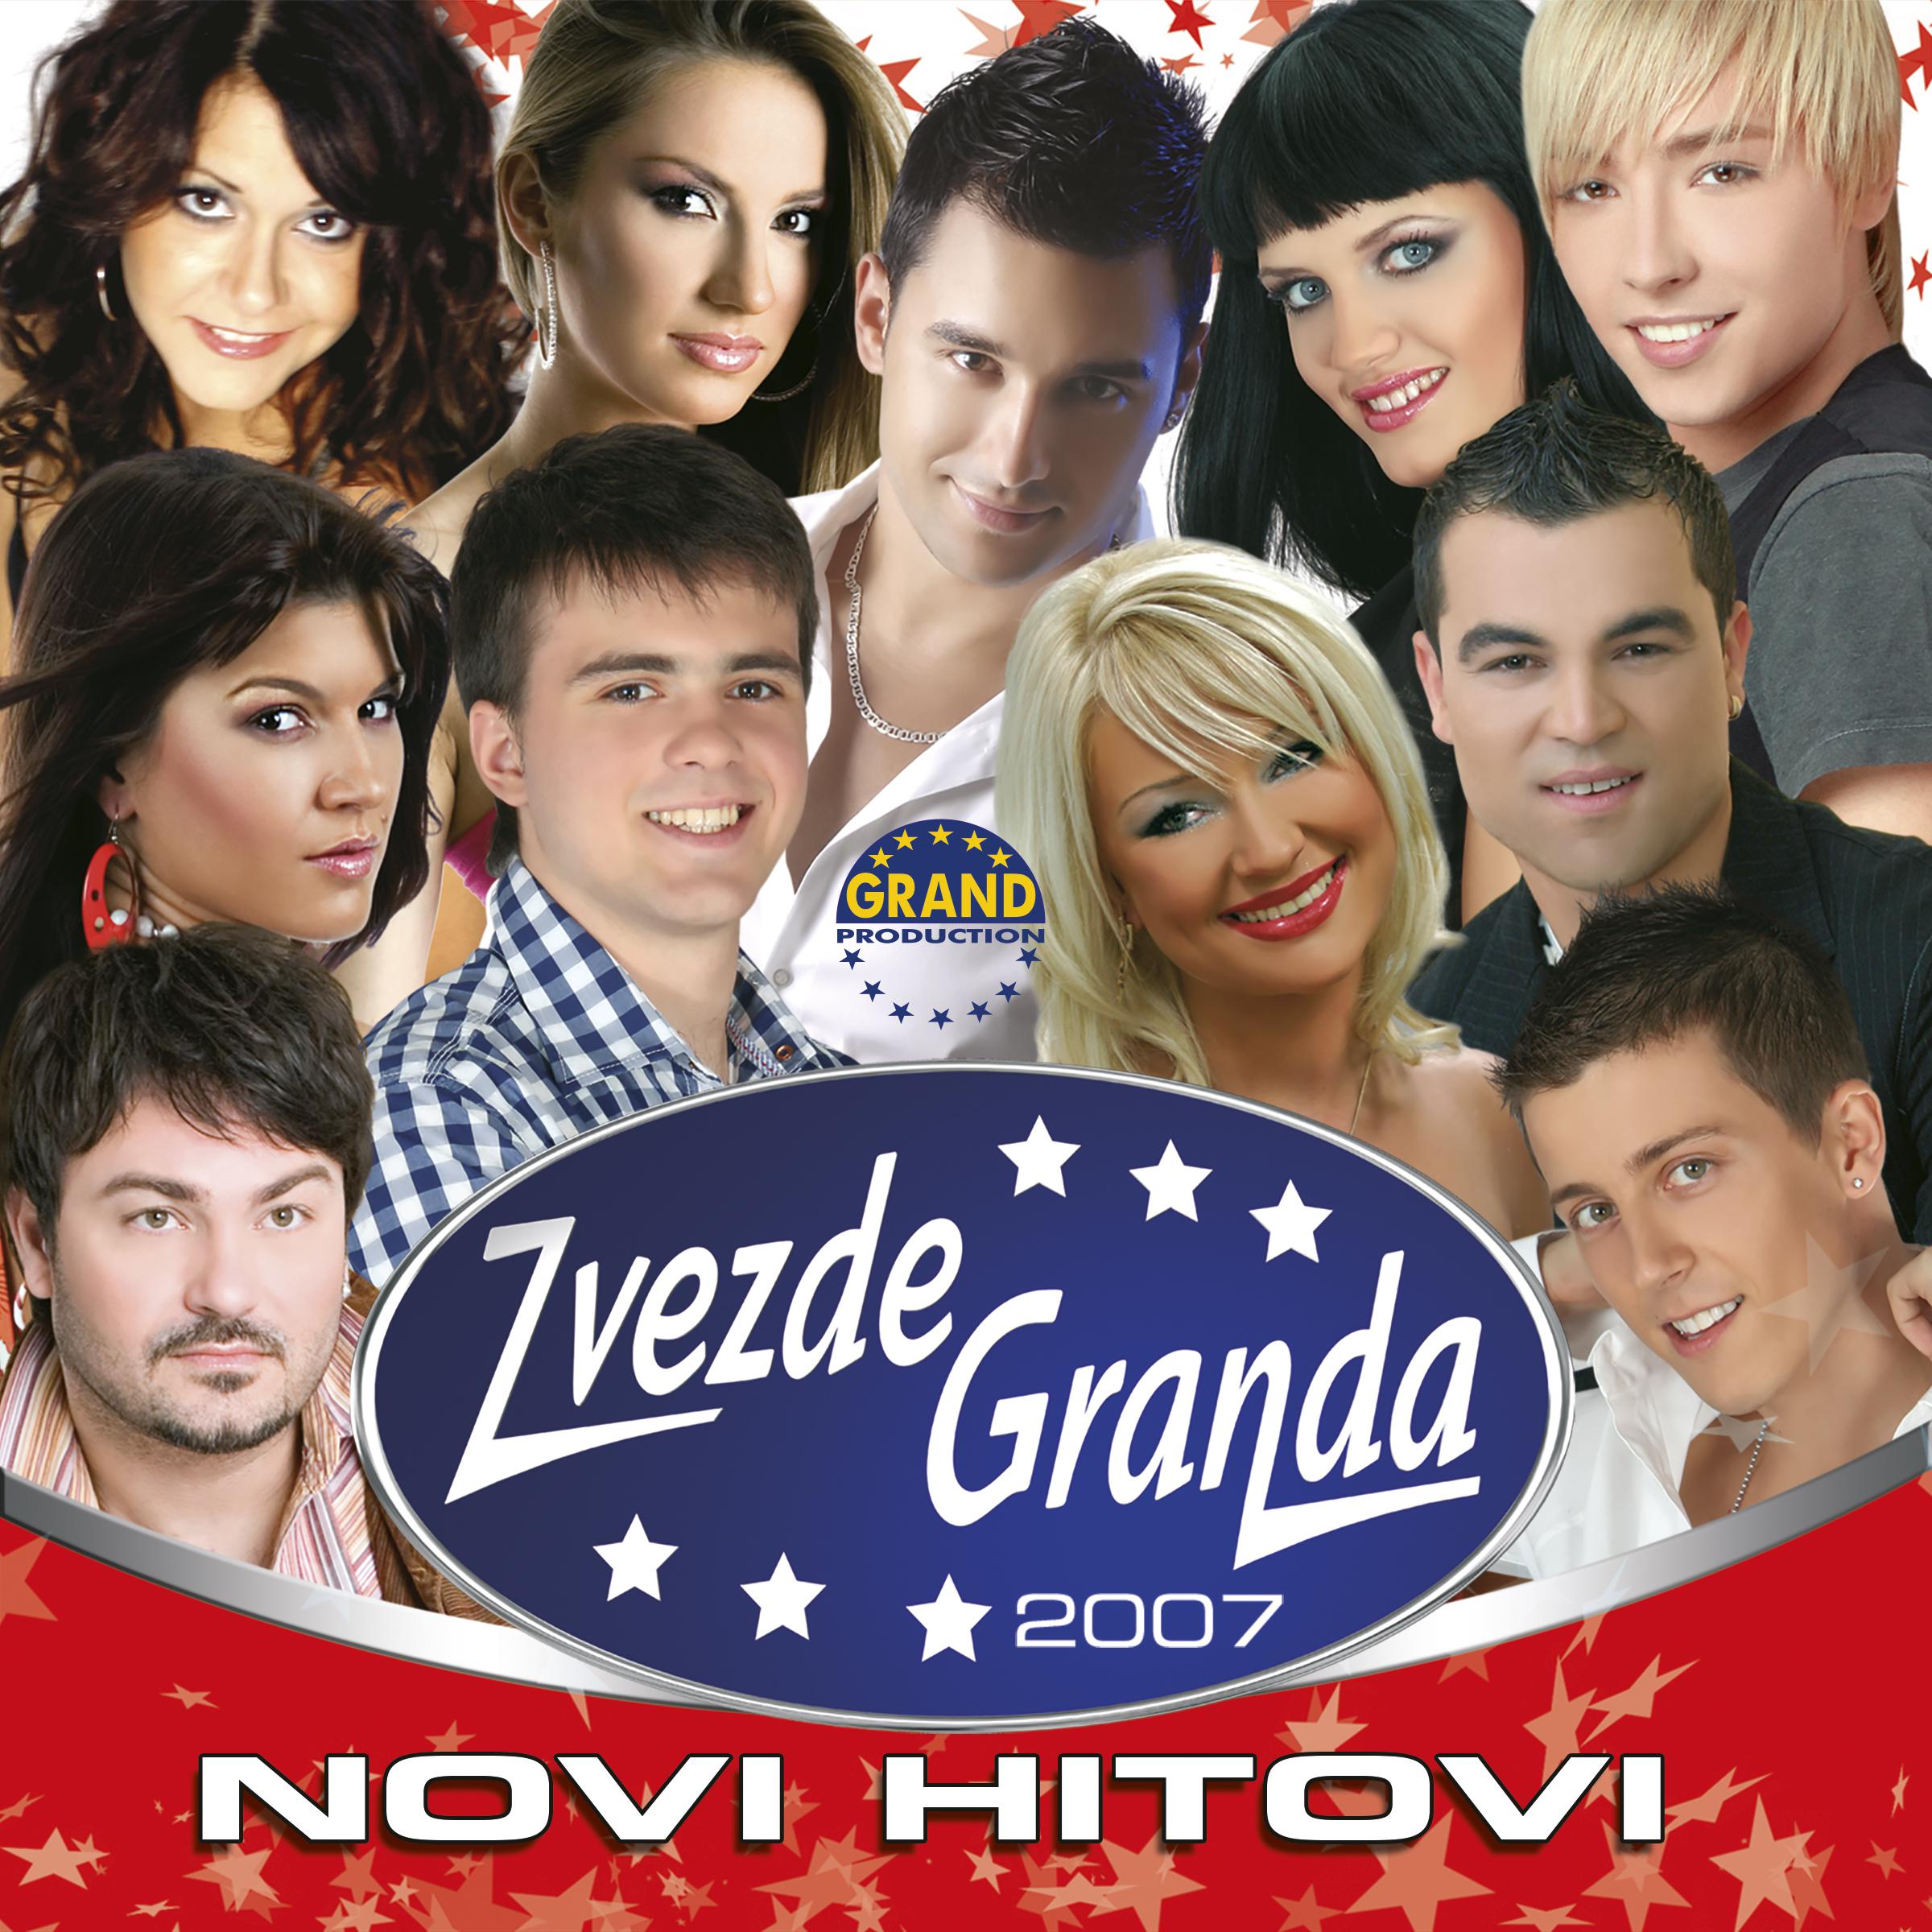 Zvezde Granda 2007 - Novi Hitovi